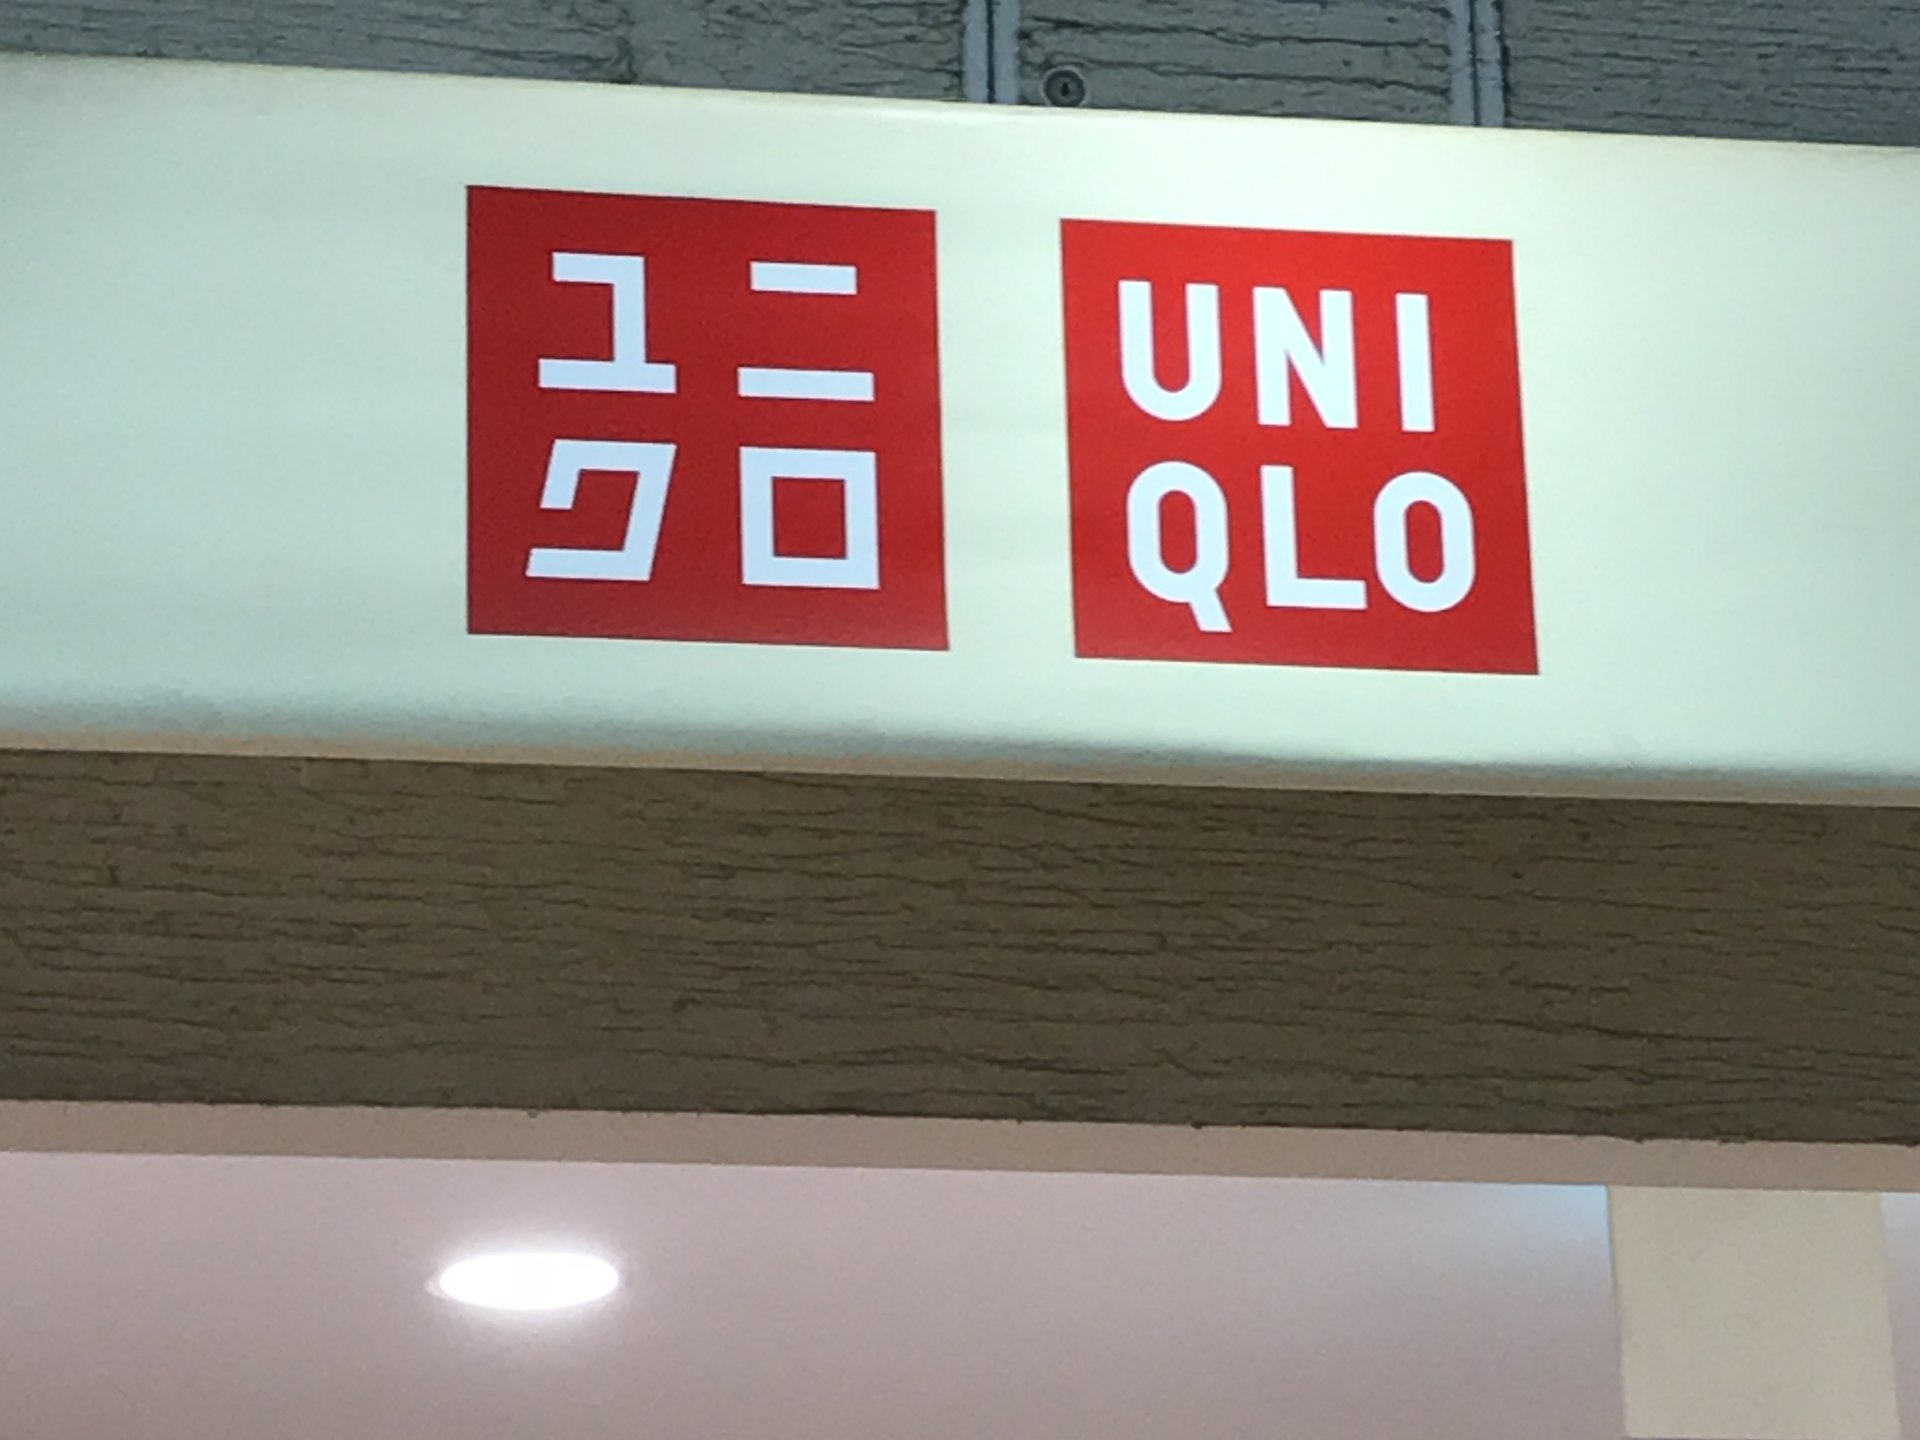 ユニクロ (エキュート品川サウス店)